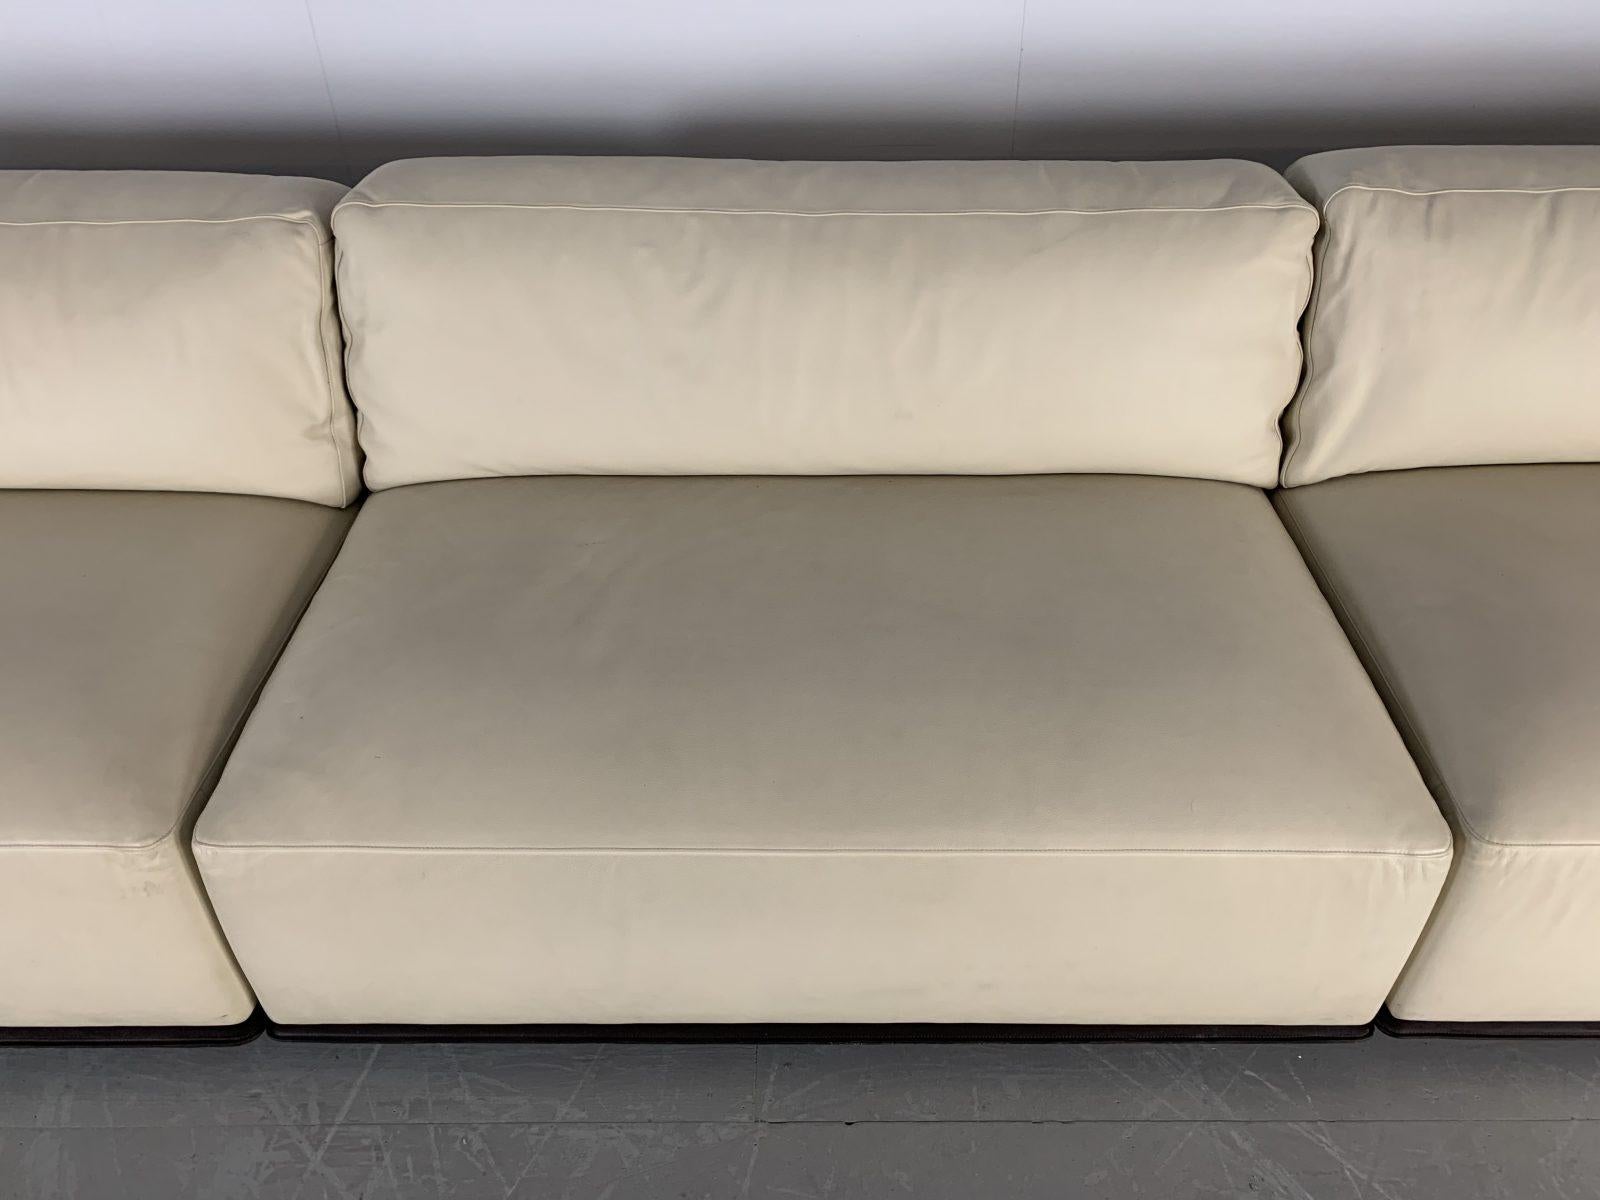 Sublime Poltrona Frau “Cassiopea” Large Sofa with Bookcase-End in Saddle Leather 4